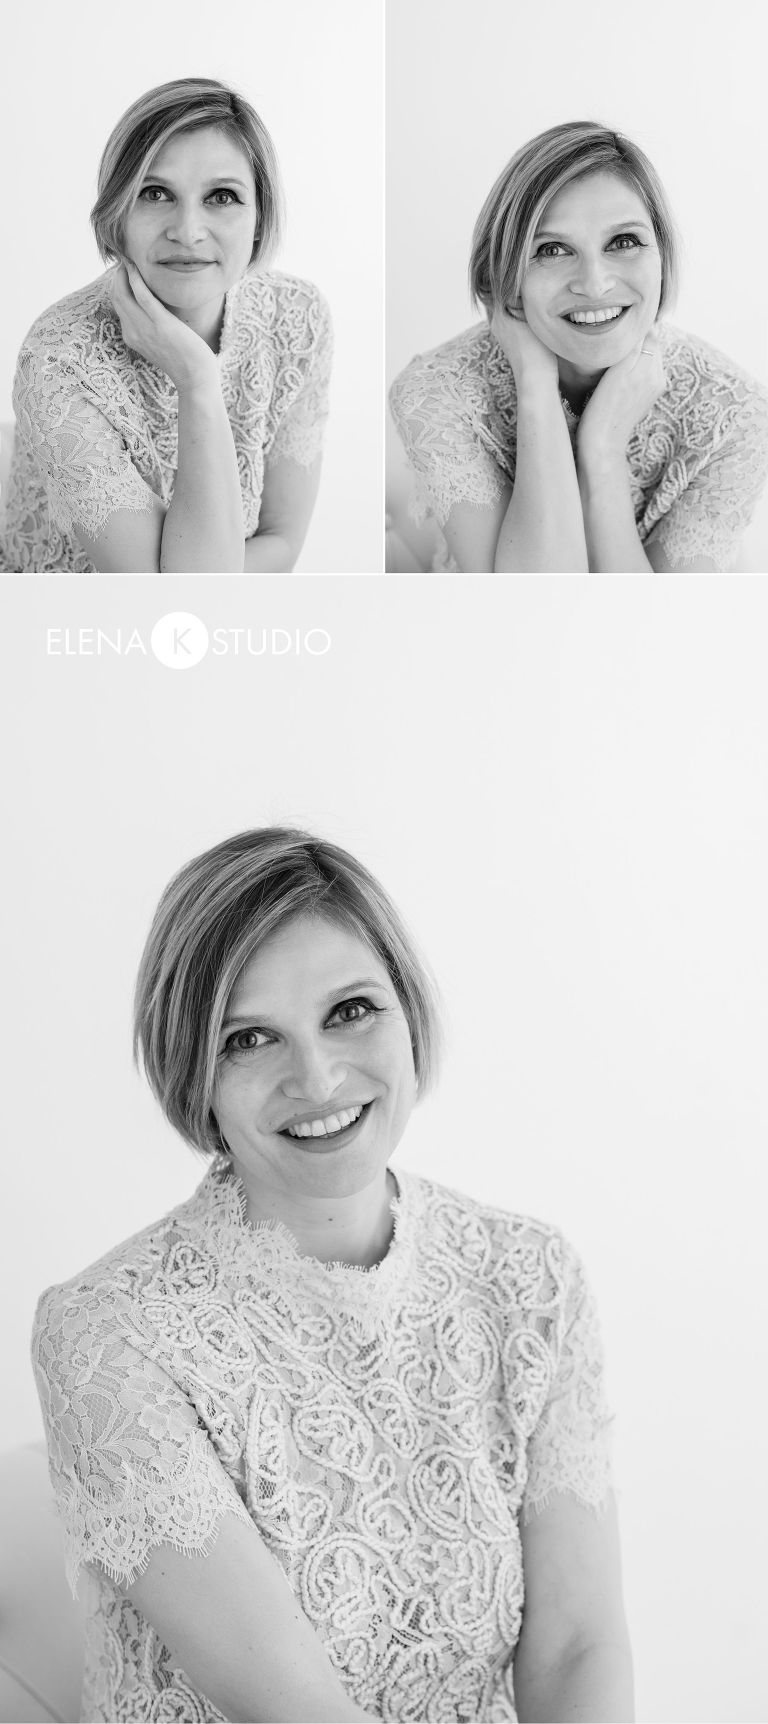 elena k studio - fotografa foto di lavoro